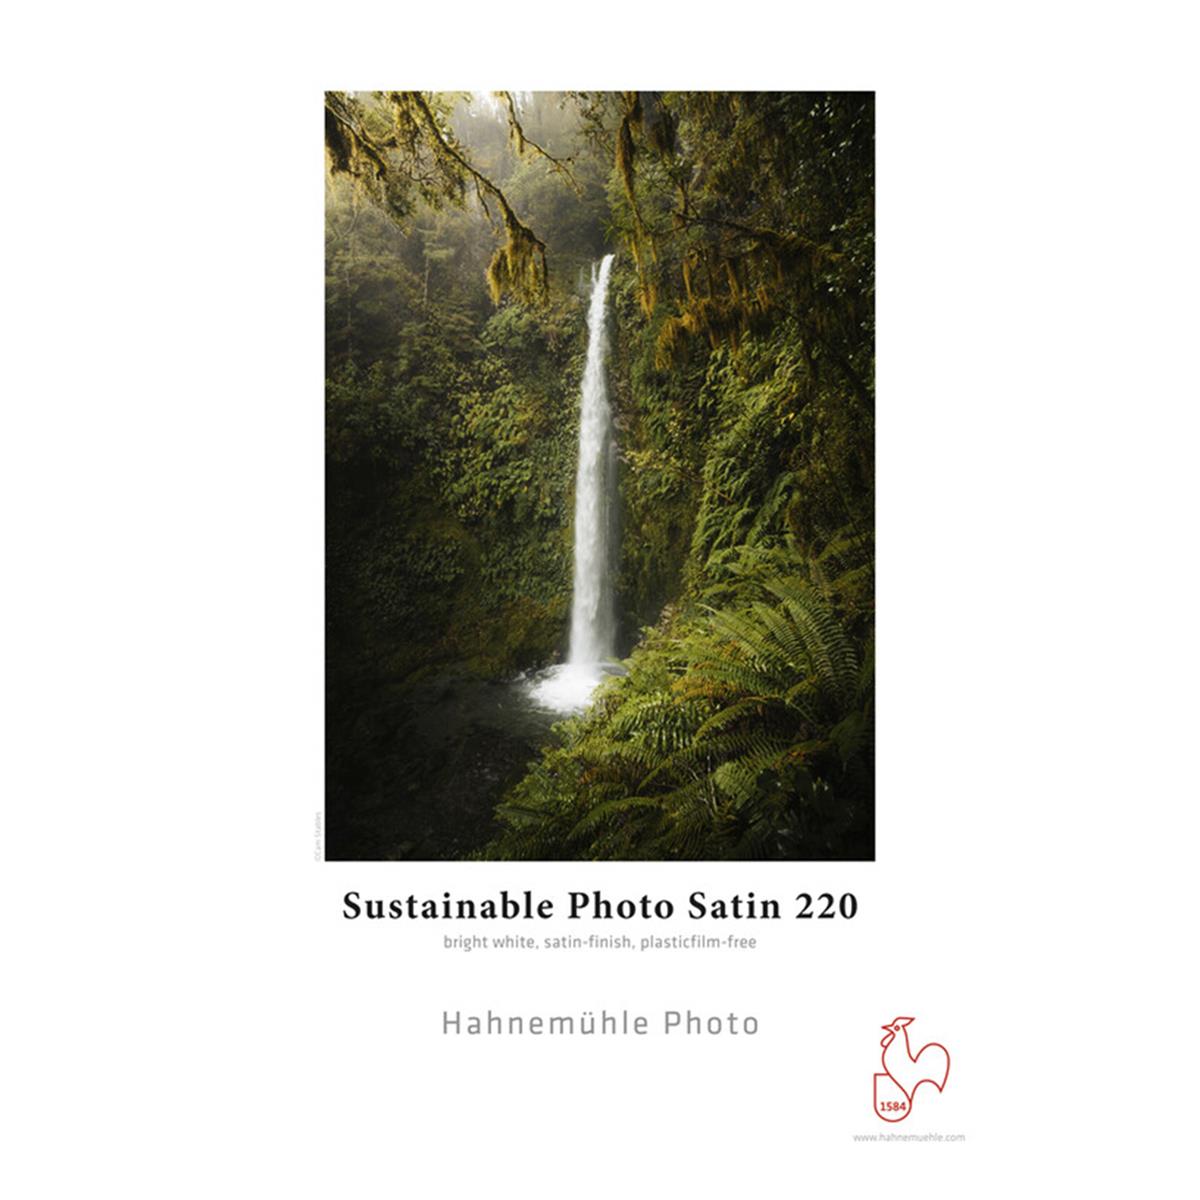 Image of Hahnemuhle Sustainable Photo Satin Inkjet Photo Paper